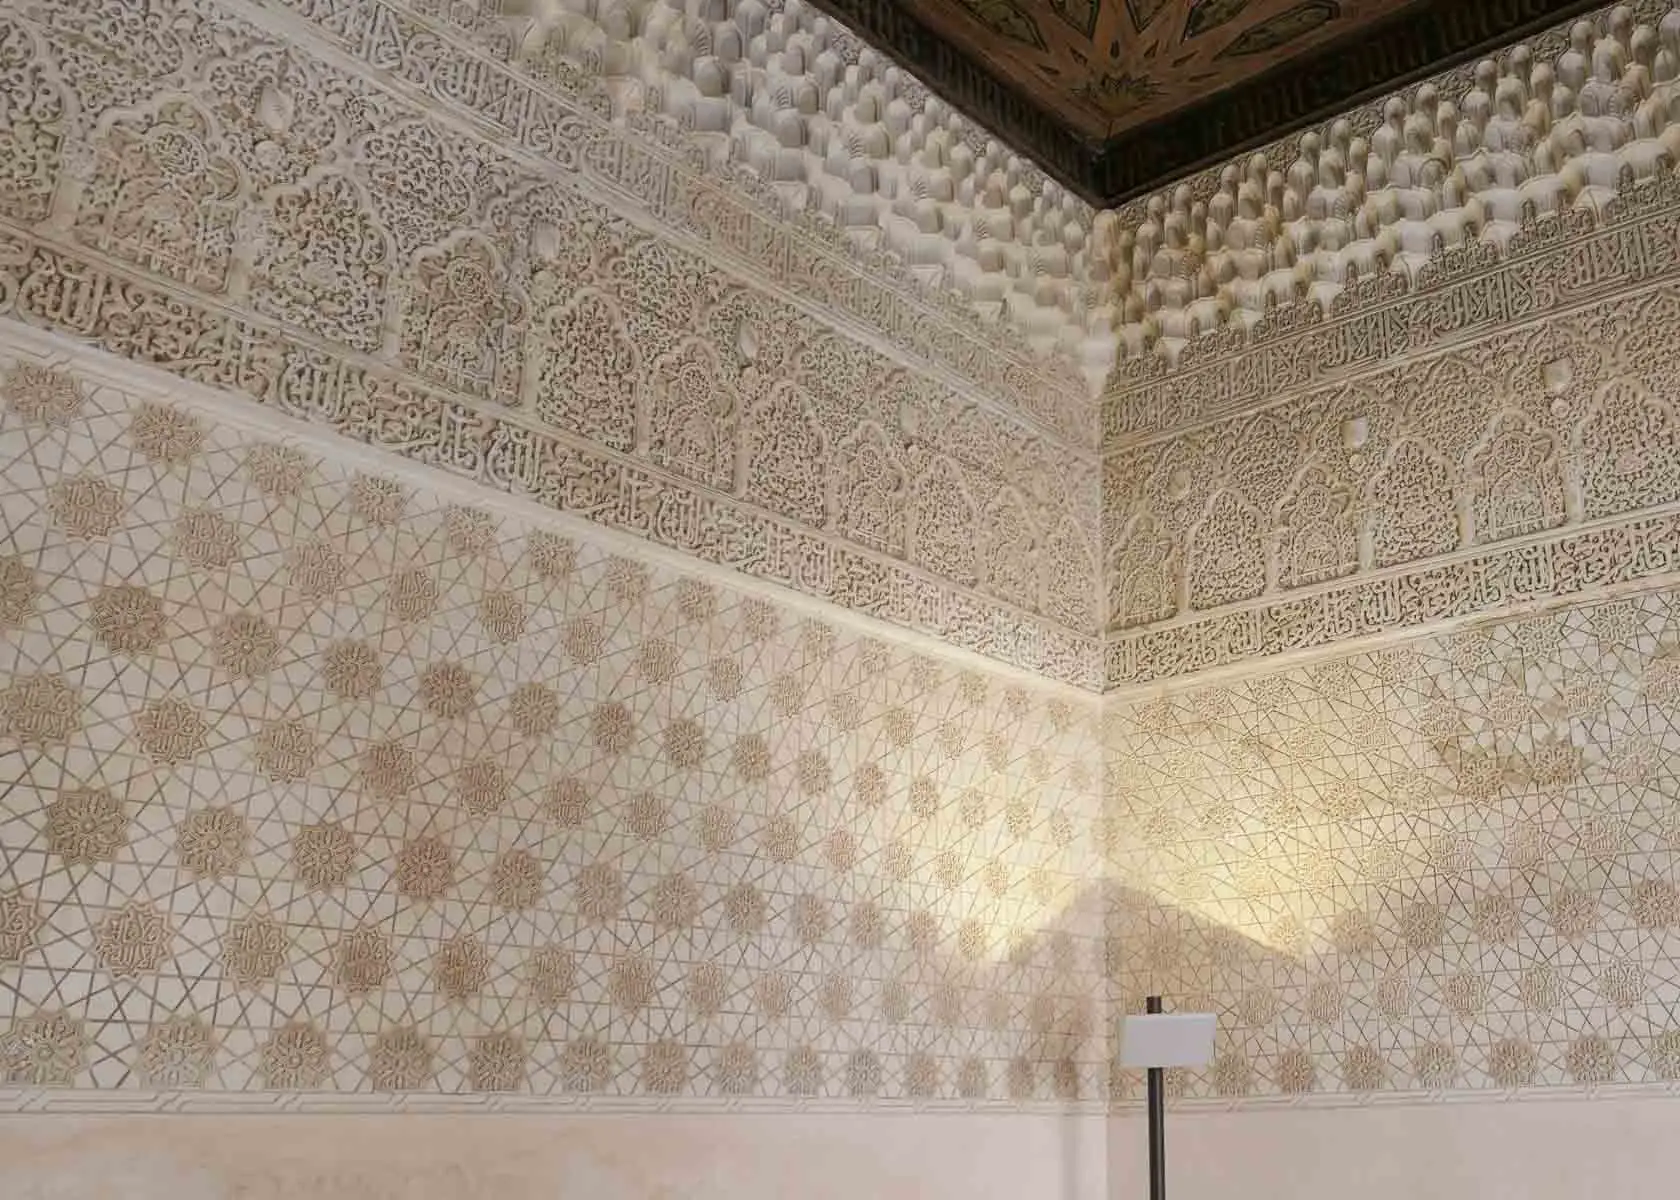 Prachtvolle Steinmetzarbeiten in der Alhambra